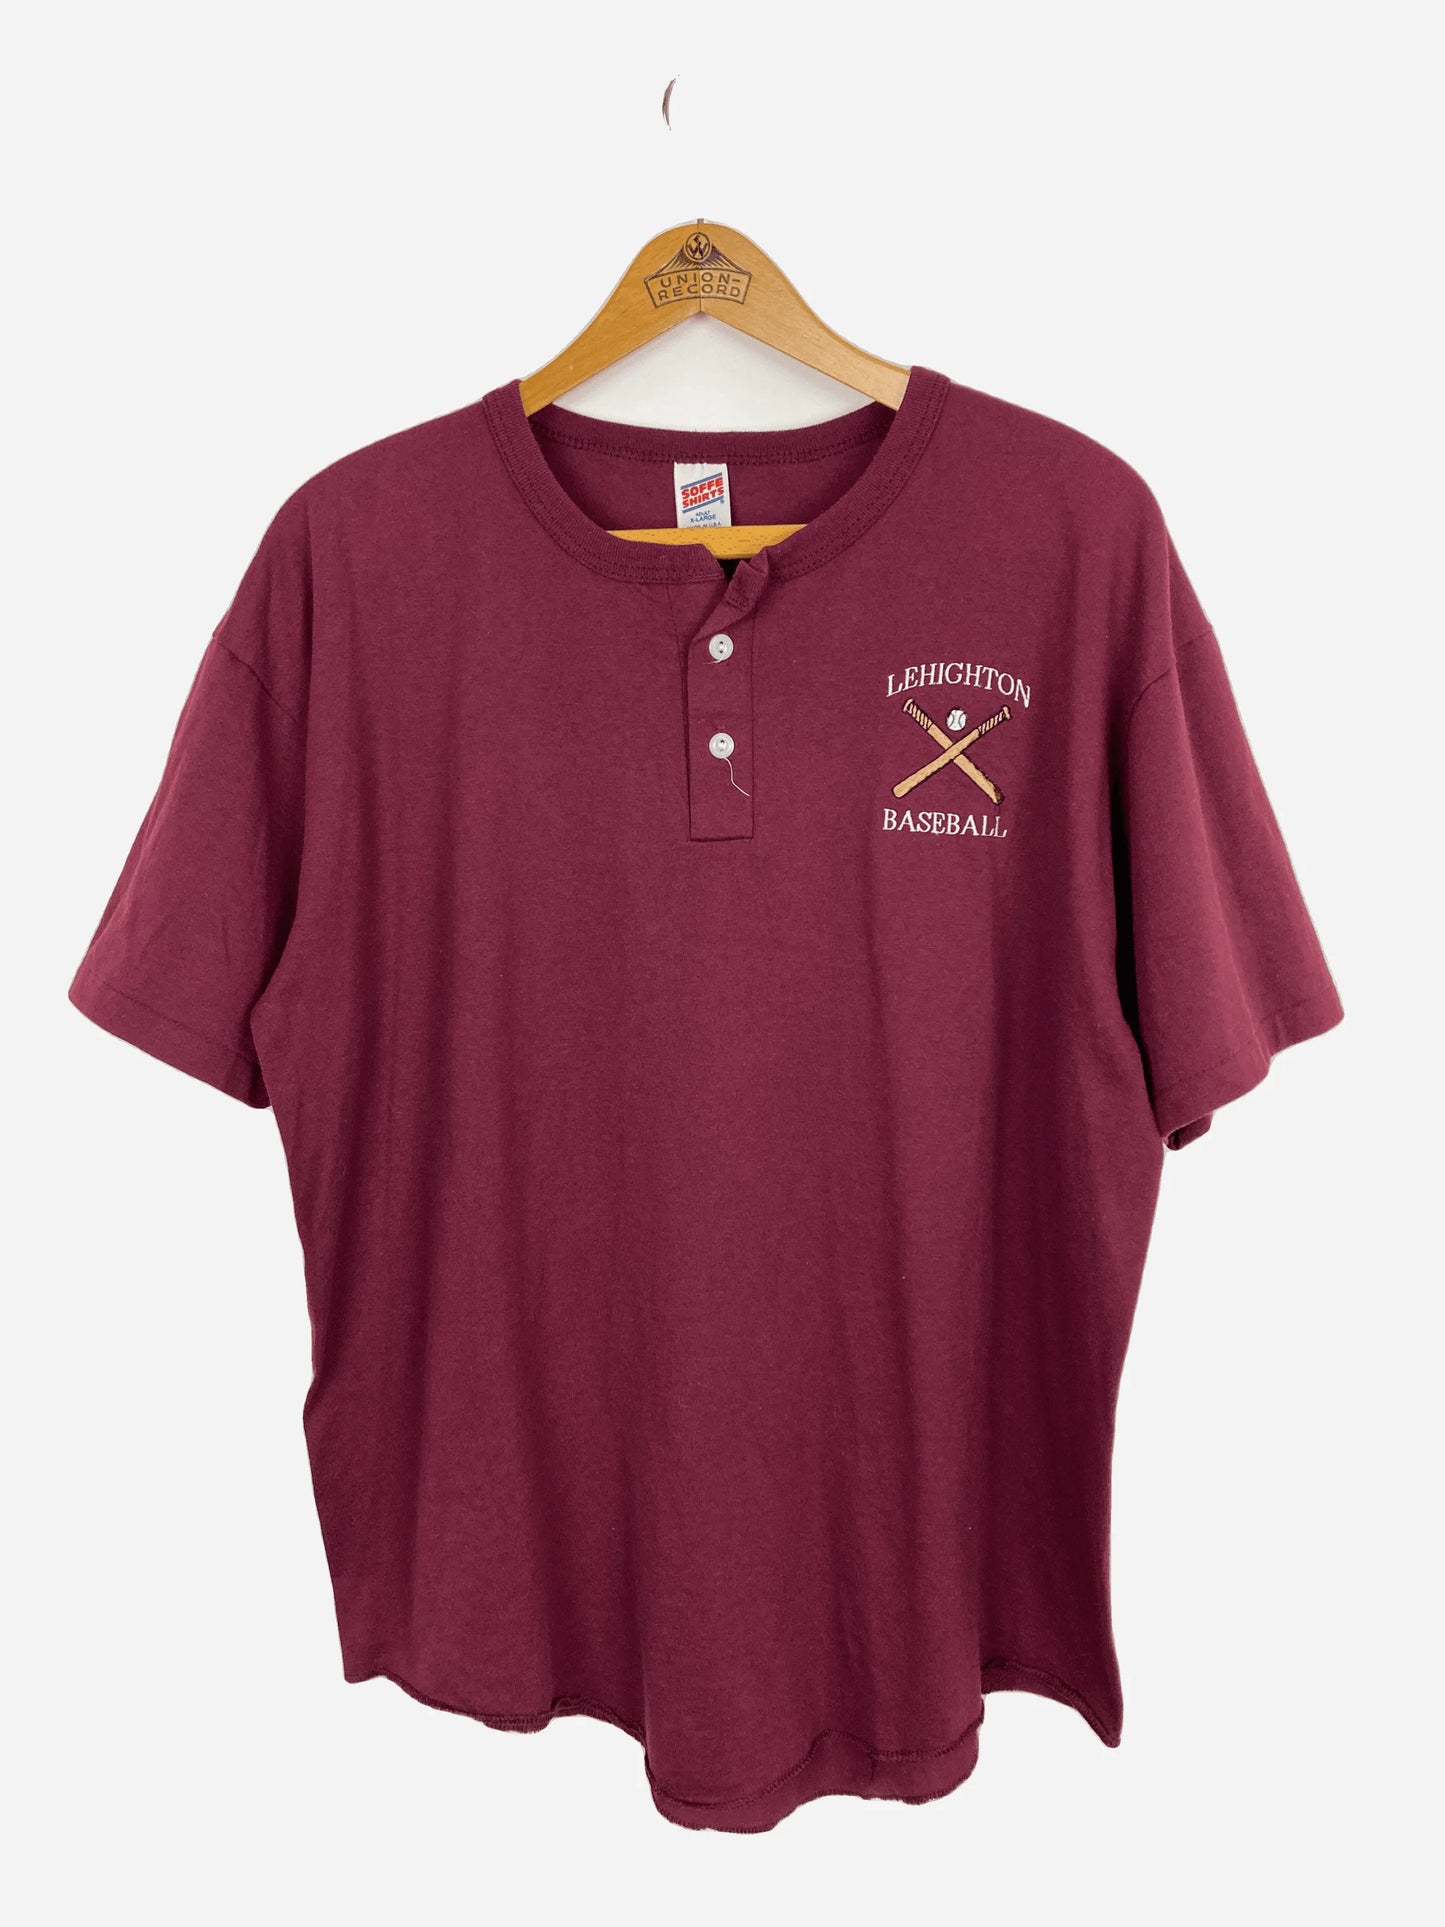 „Lehighton Baseball“ T-Shirt (XL)